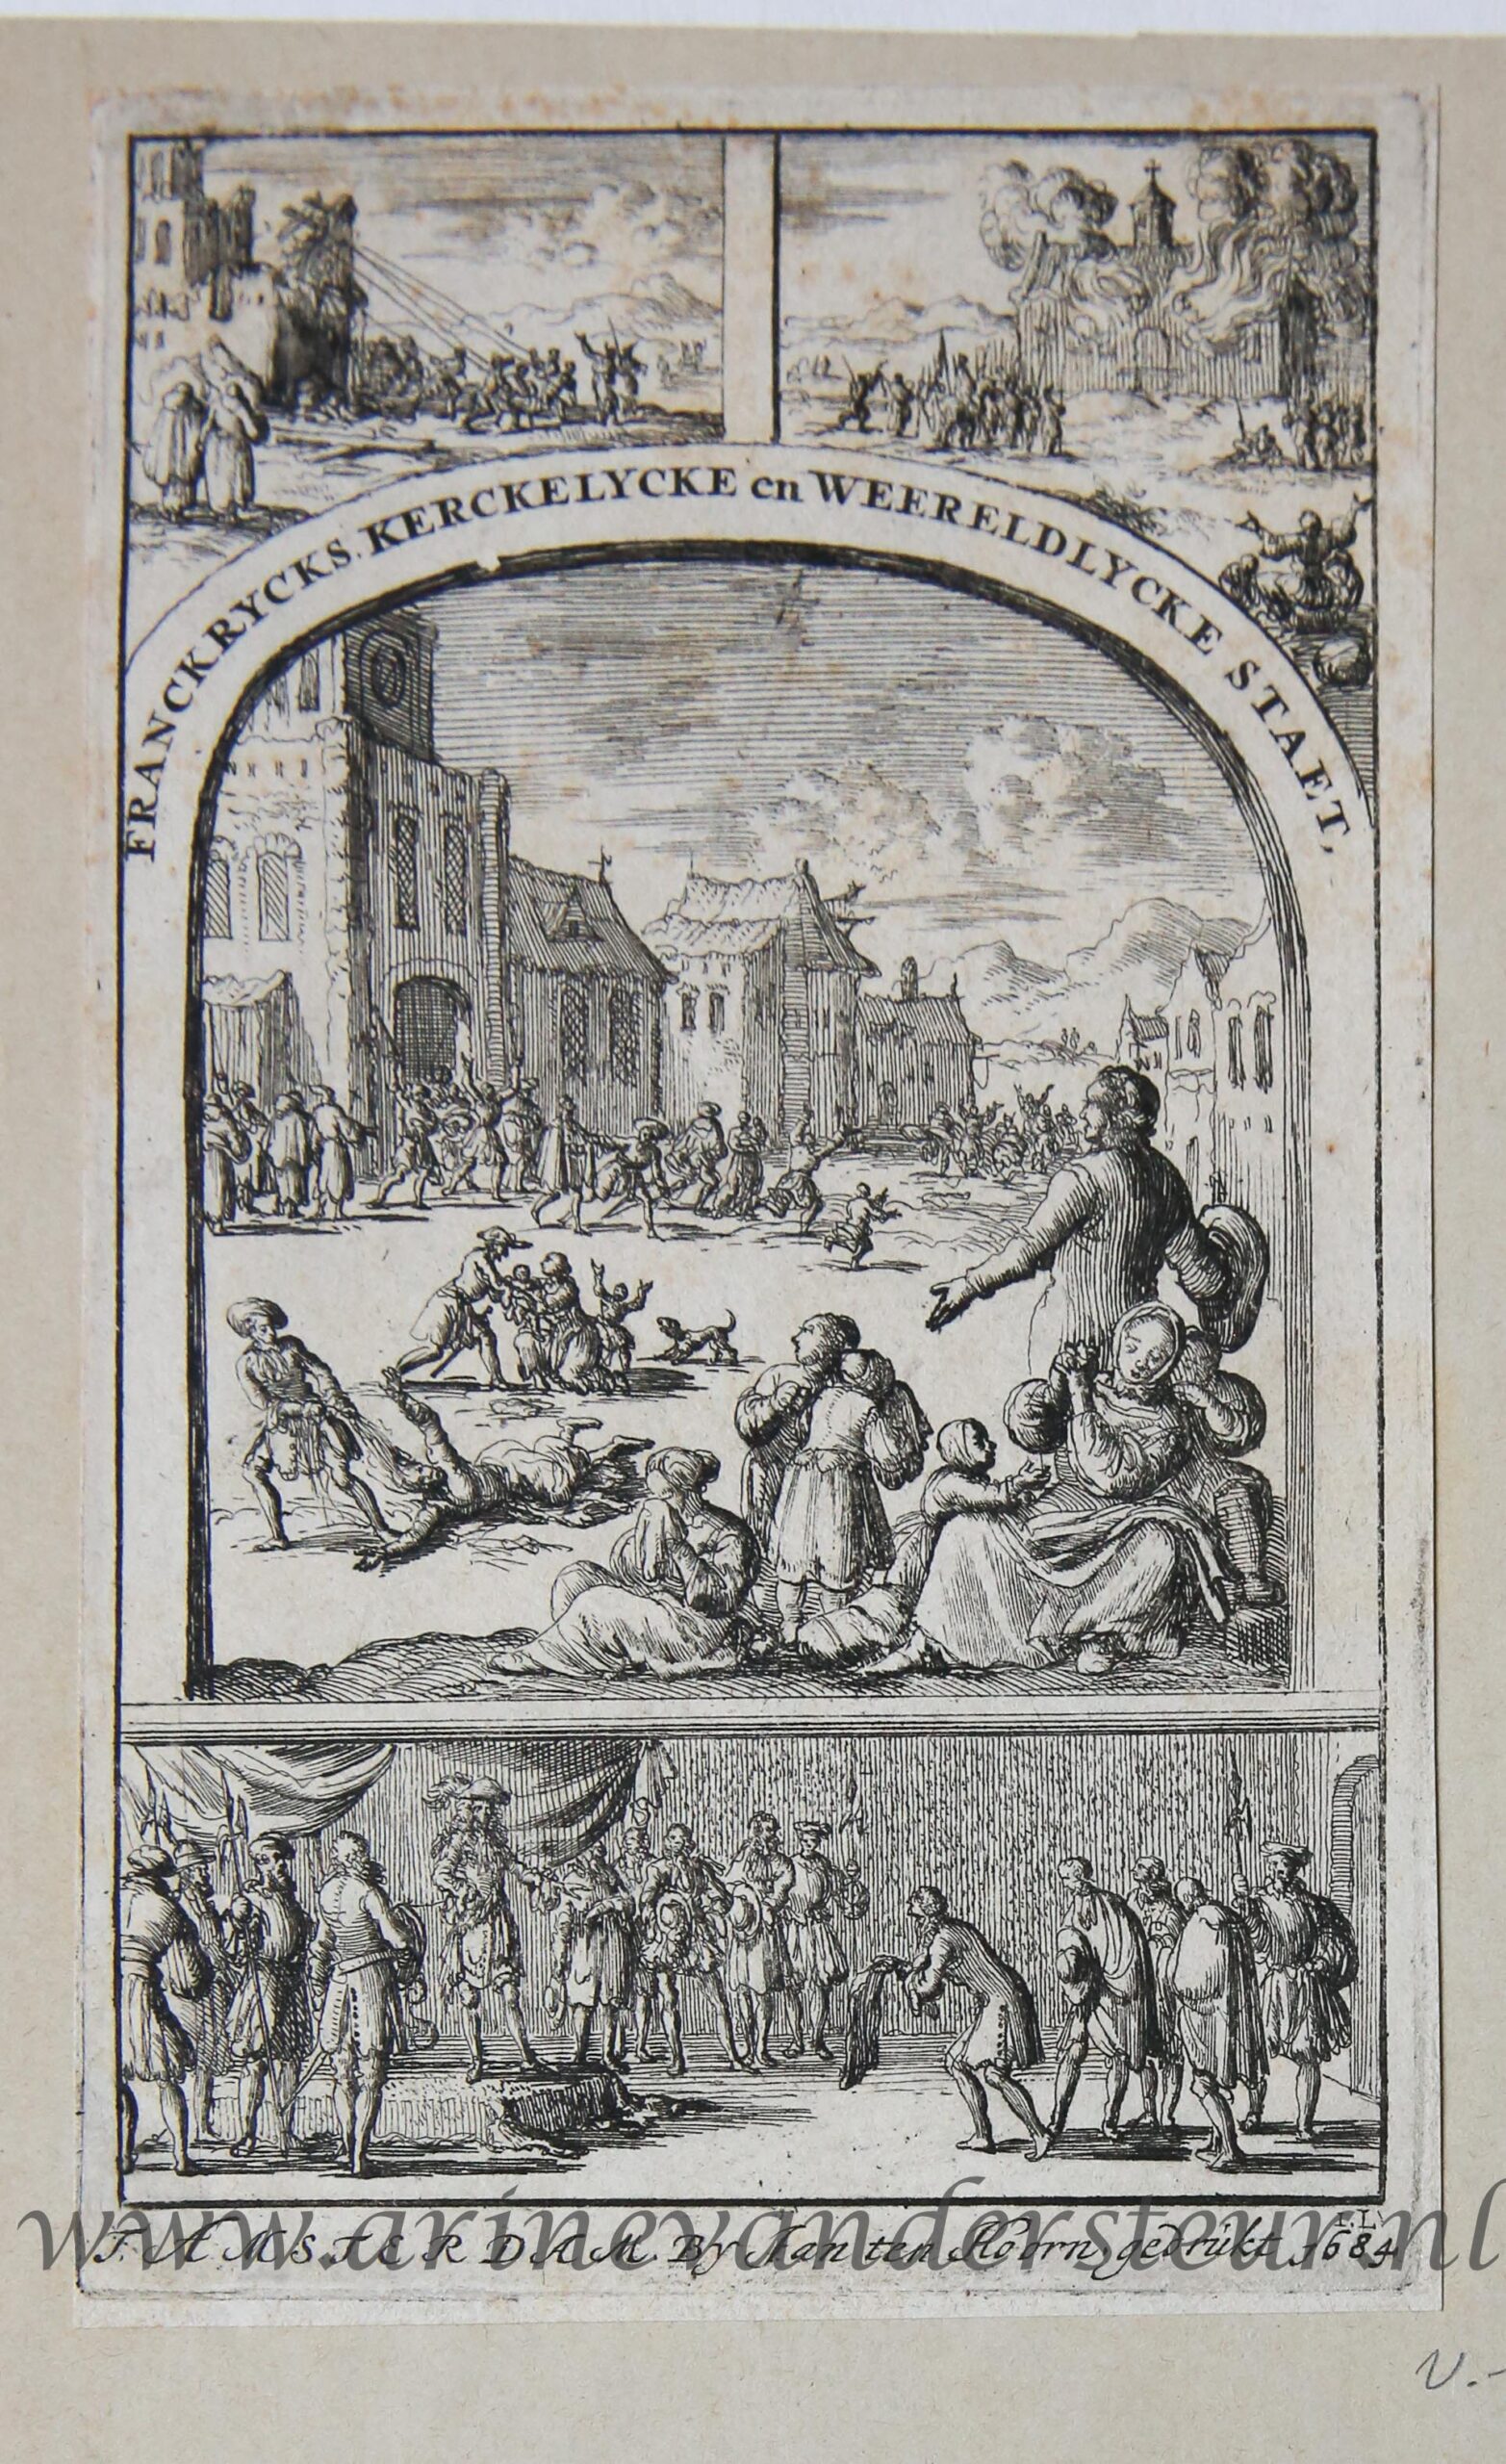 [Antique title page, 1736] Hedendaagsche historie of tegenwoordige staat van alle volkeren, published 1736, 1 p.